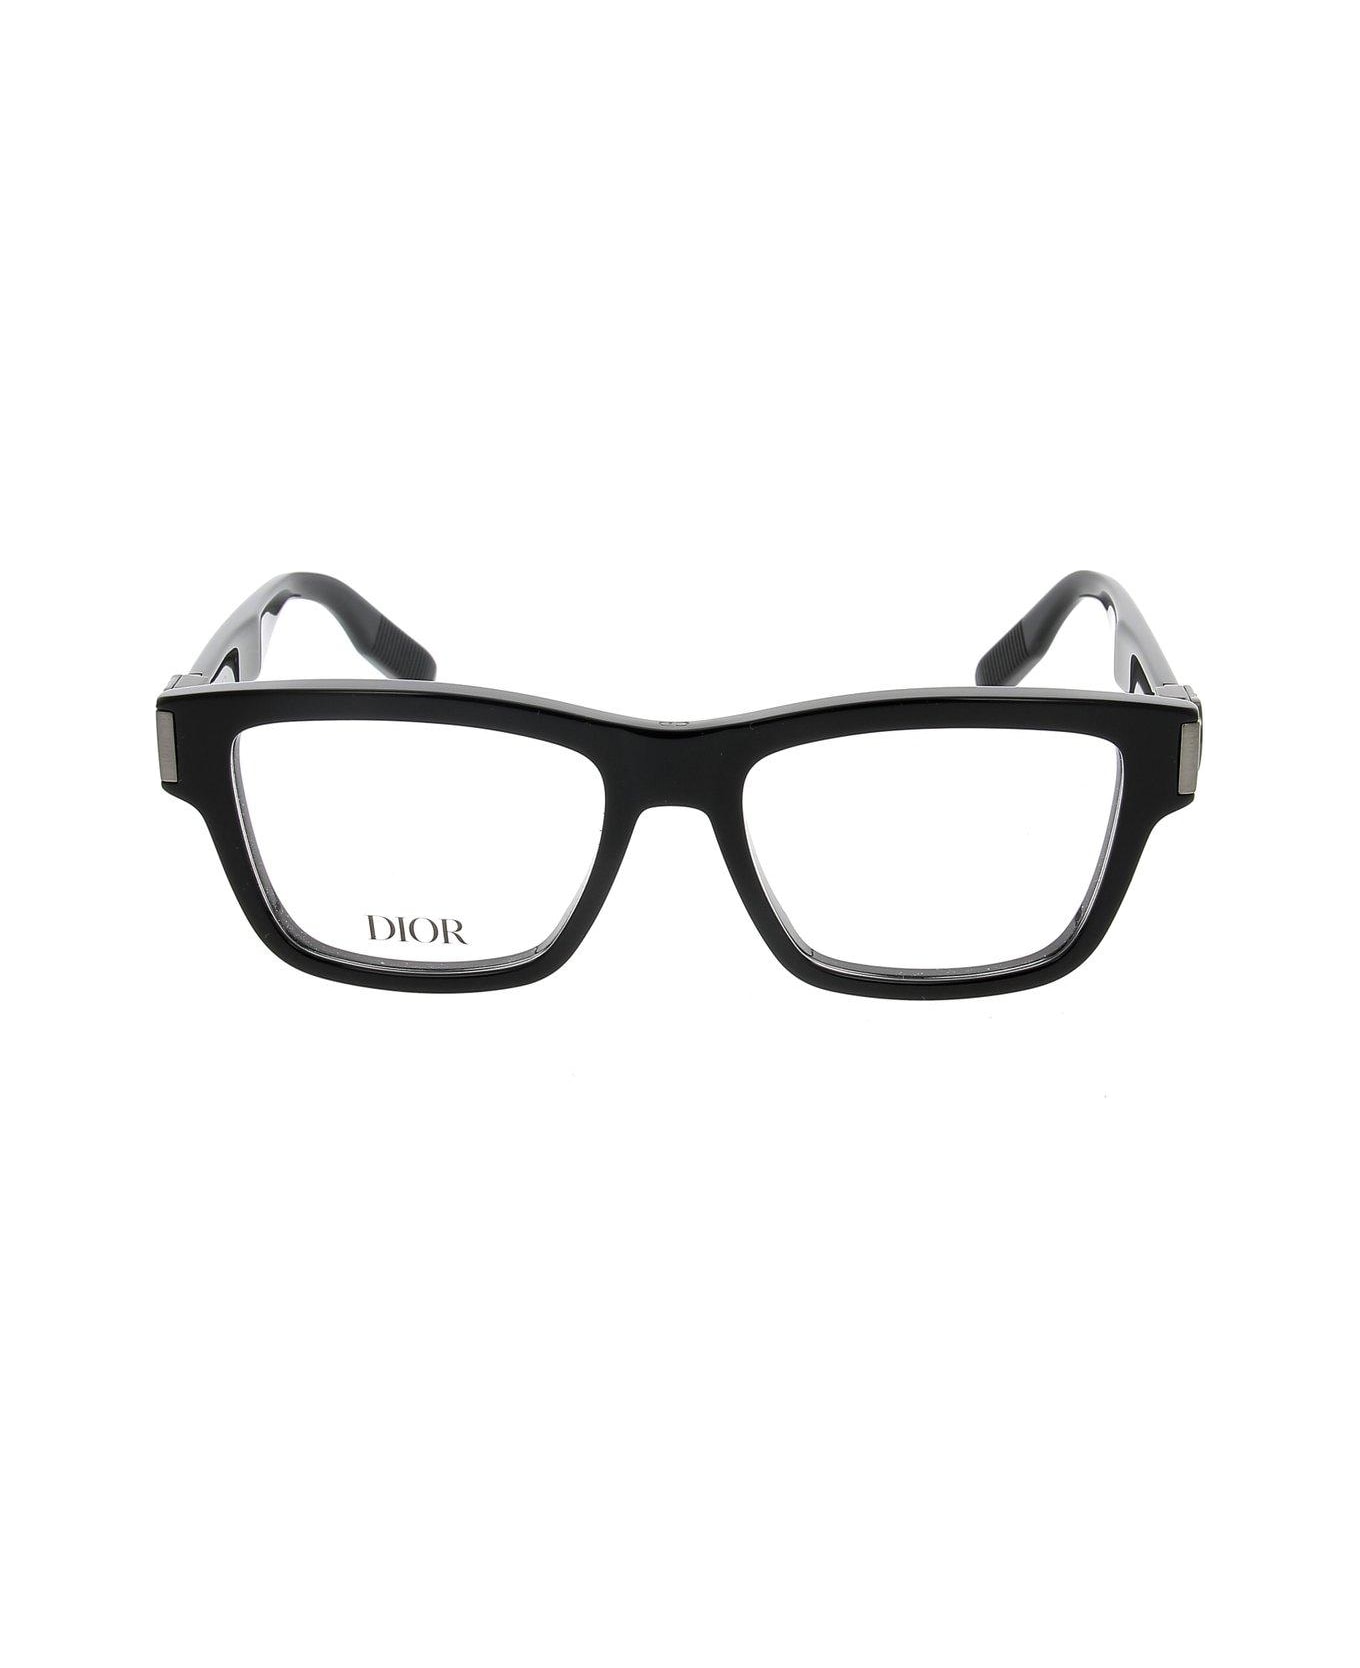 Dior Eyewear Rectangle Frame Glasses - 1000 アイウェア